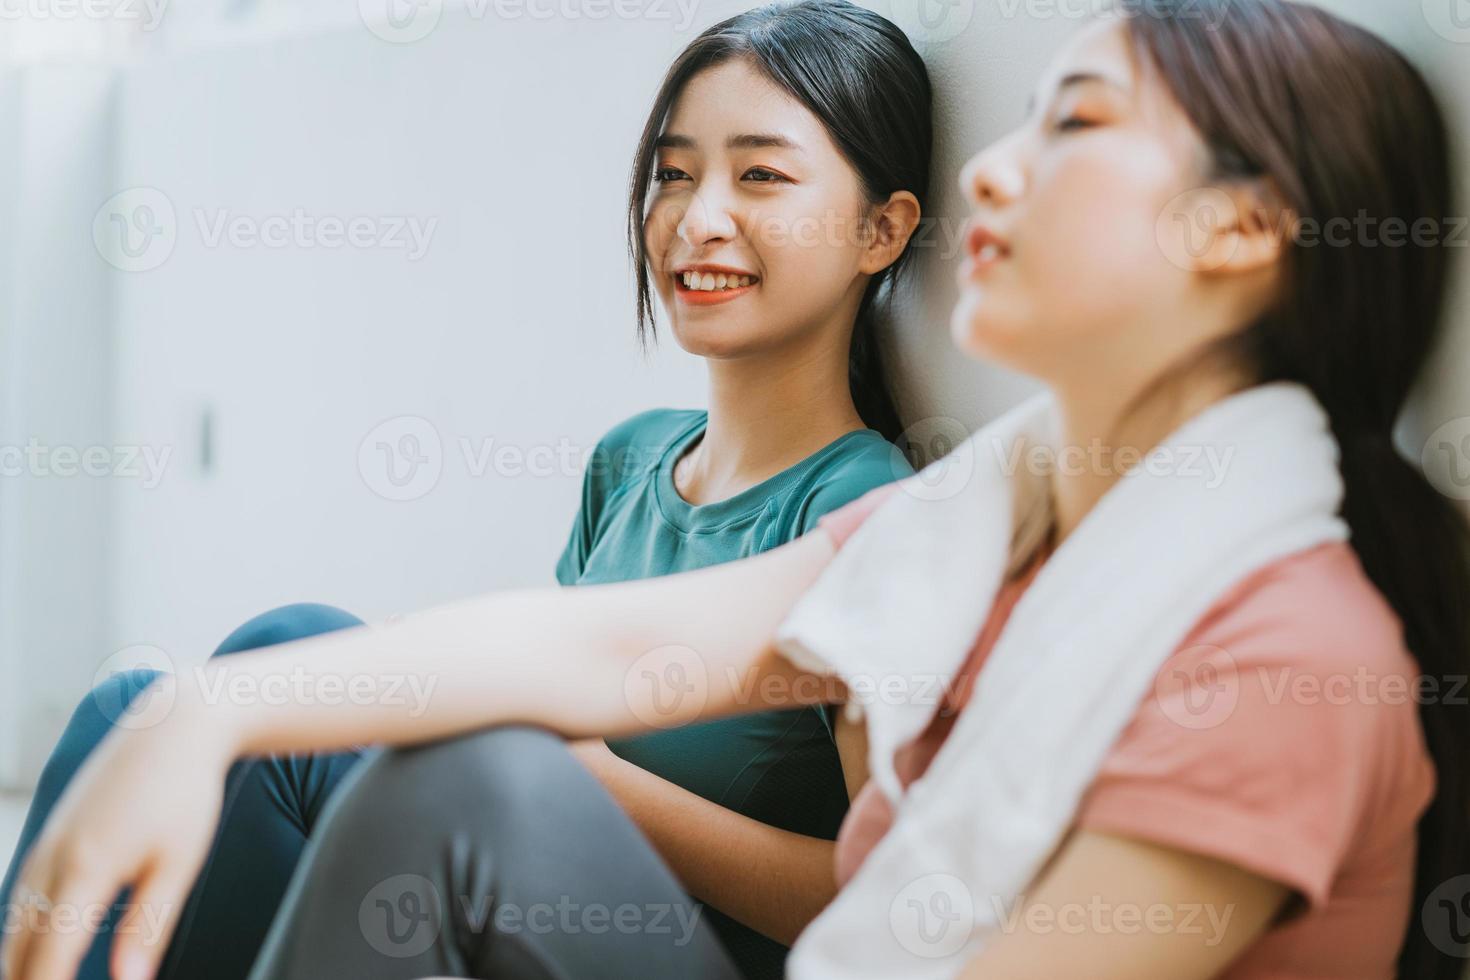 deux femmes asiatiques faisant une pause dans une séance de yoga photo